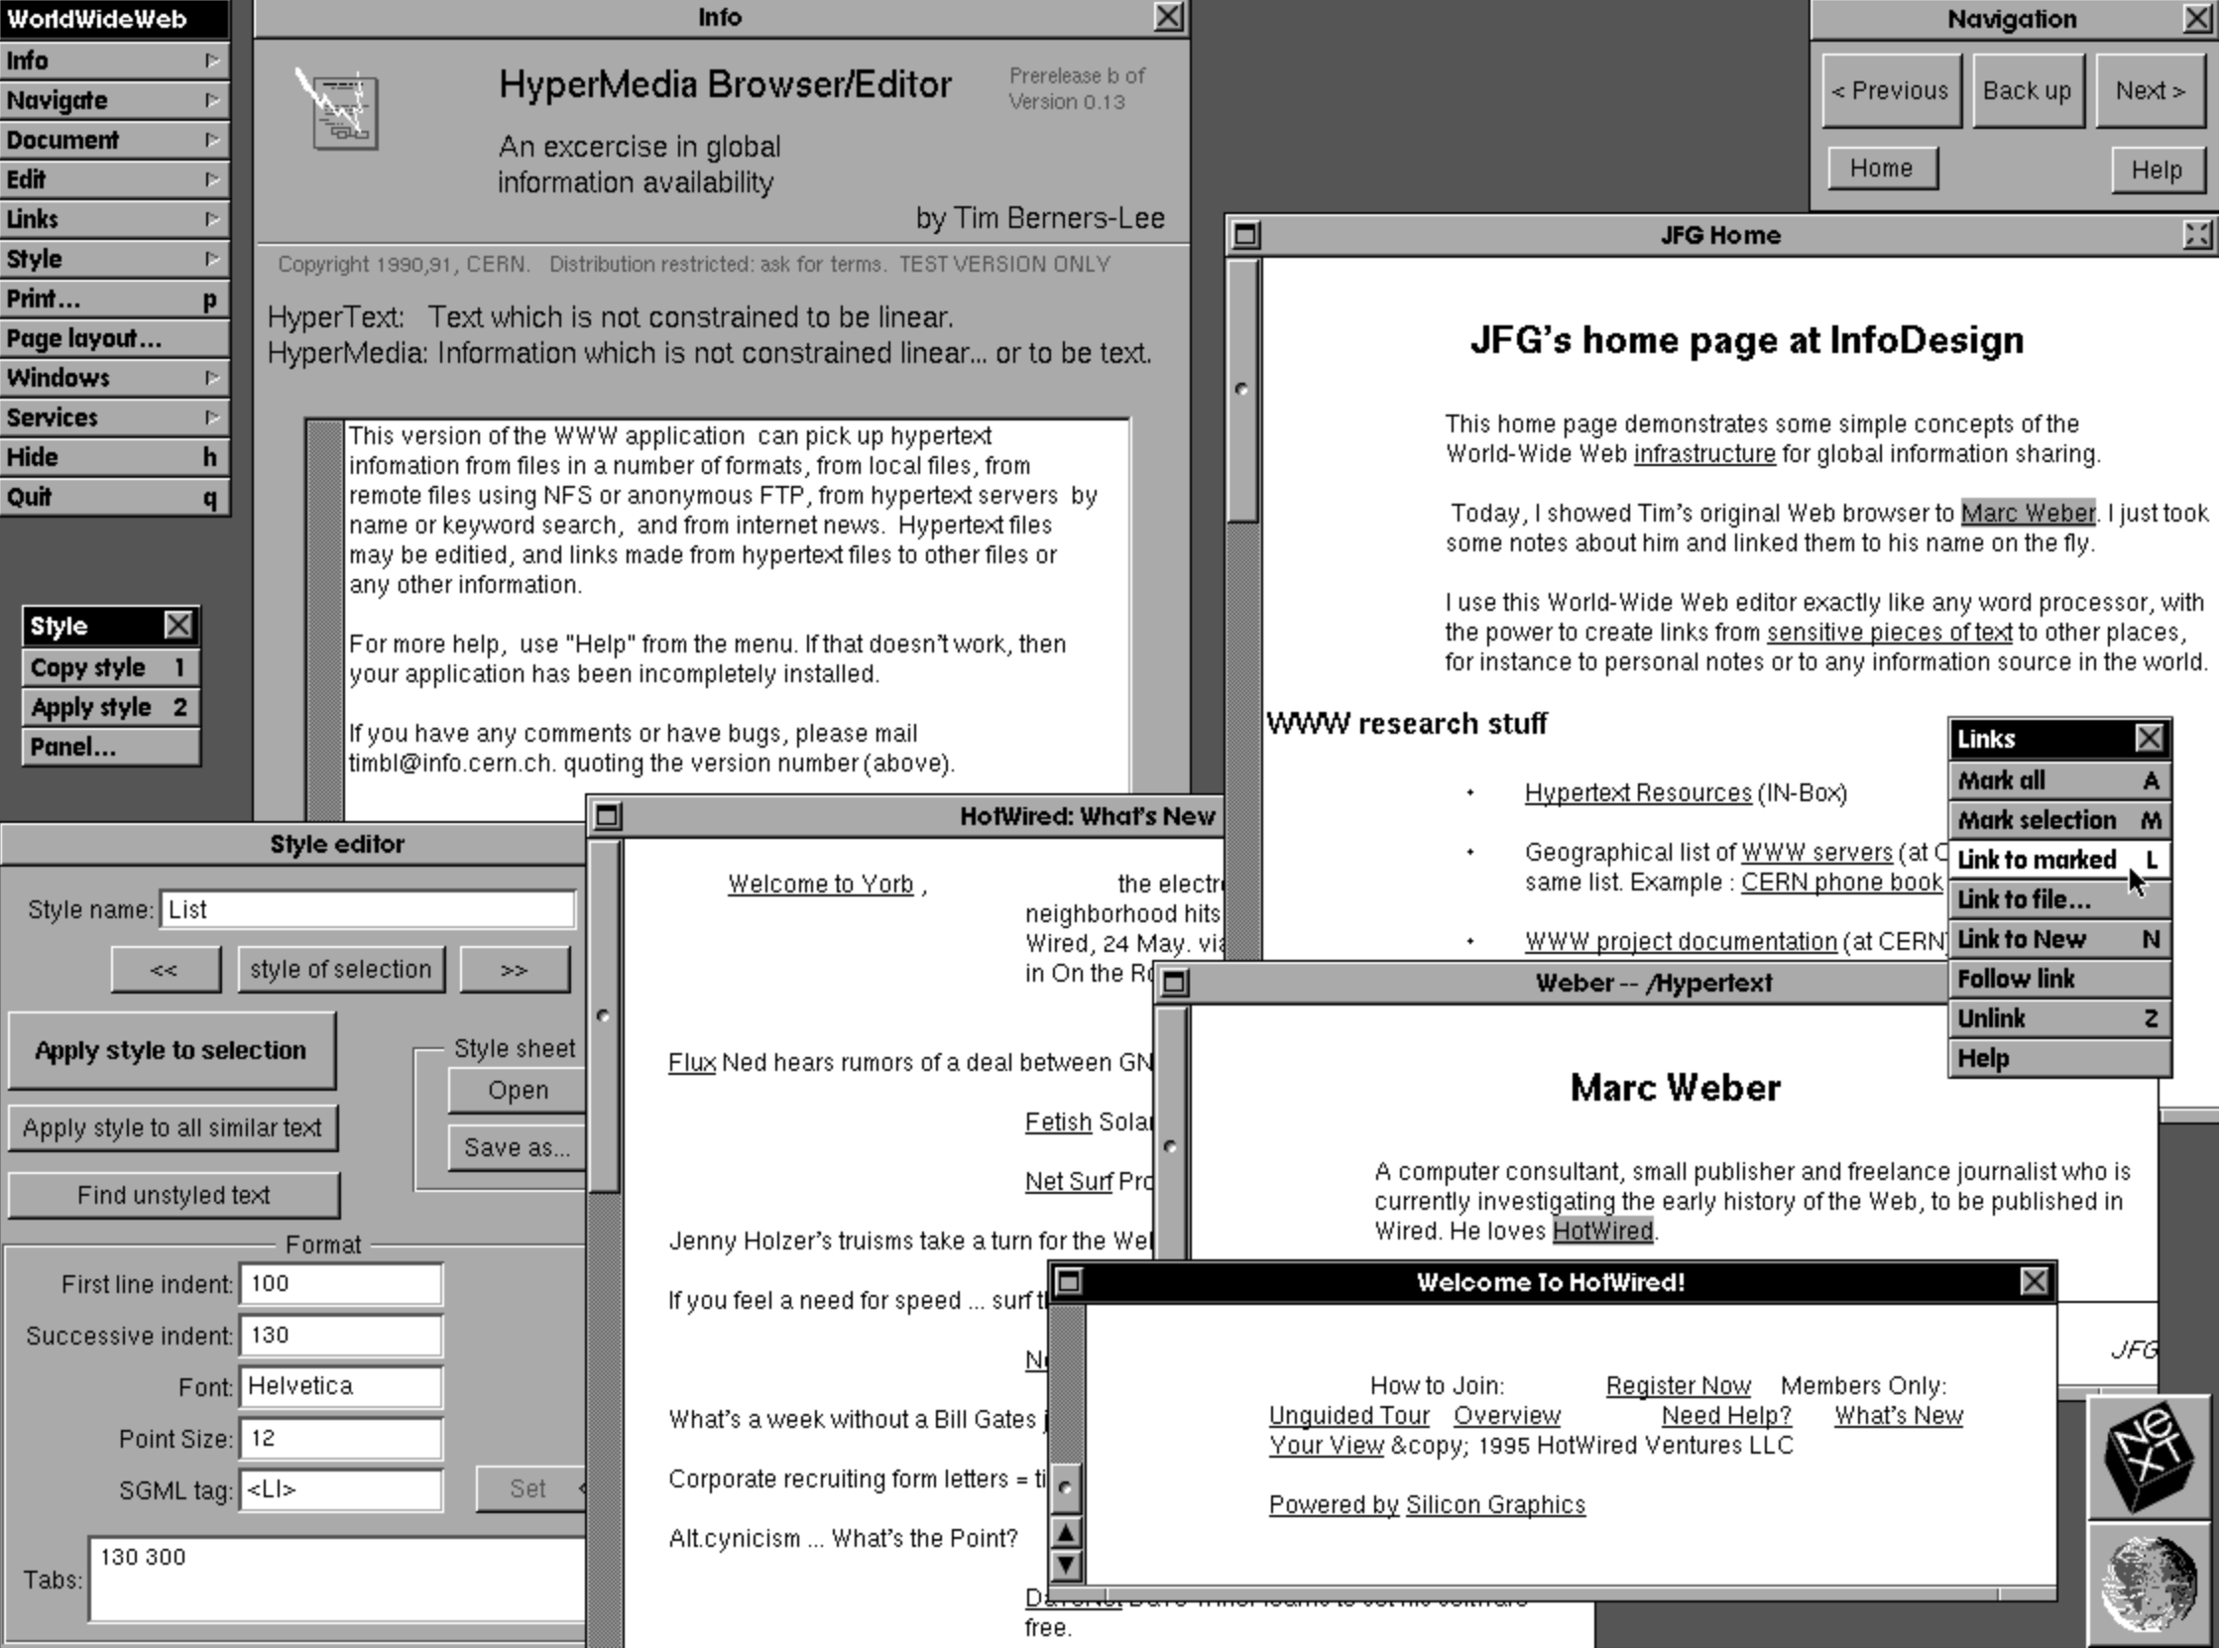 Скриншот браузерного редактора Тима Бернерса-Ли, разработанного в 1991-1992 годах